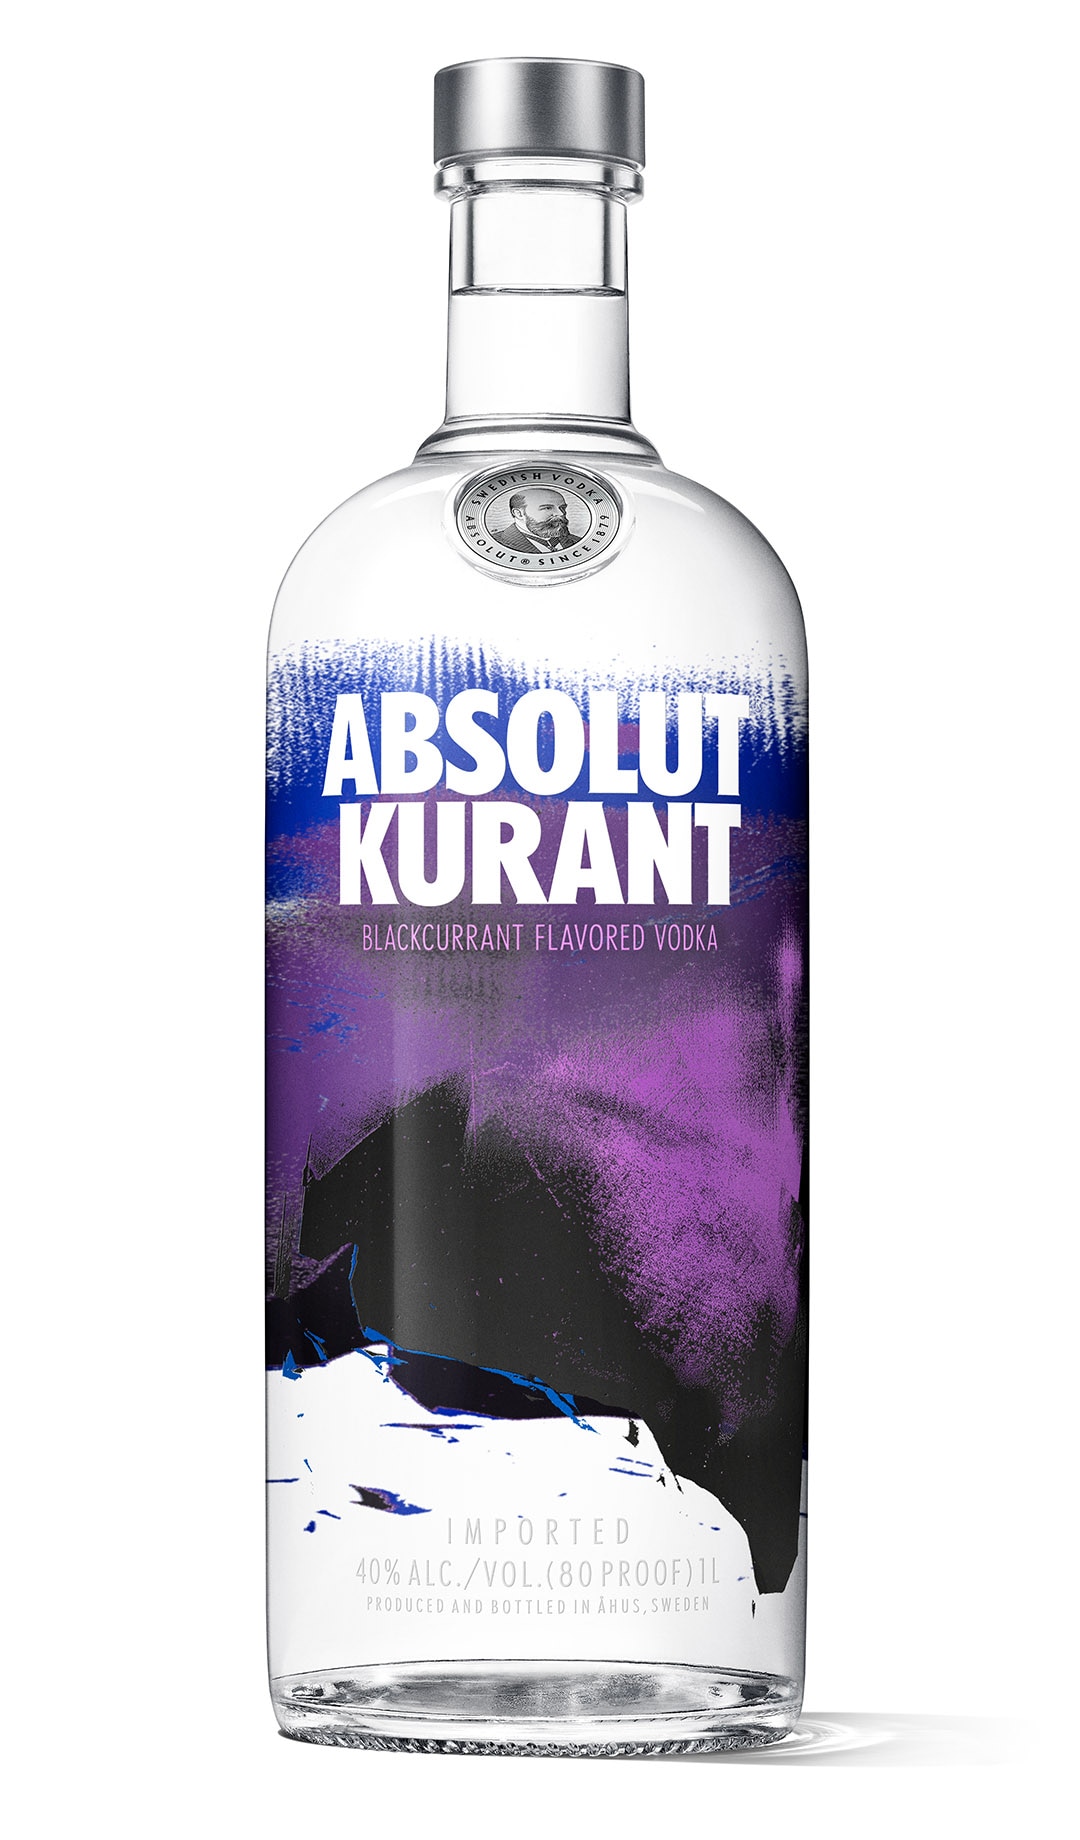 Currant Vodka - Absolut Kurant